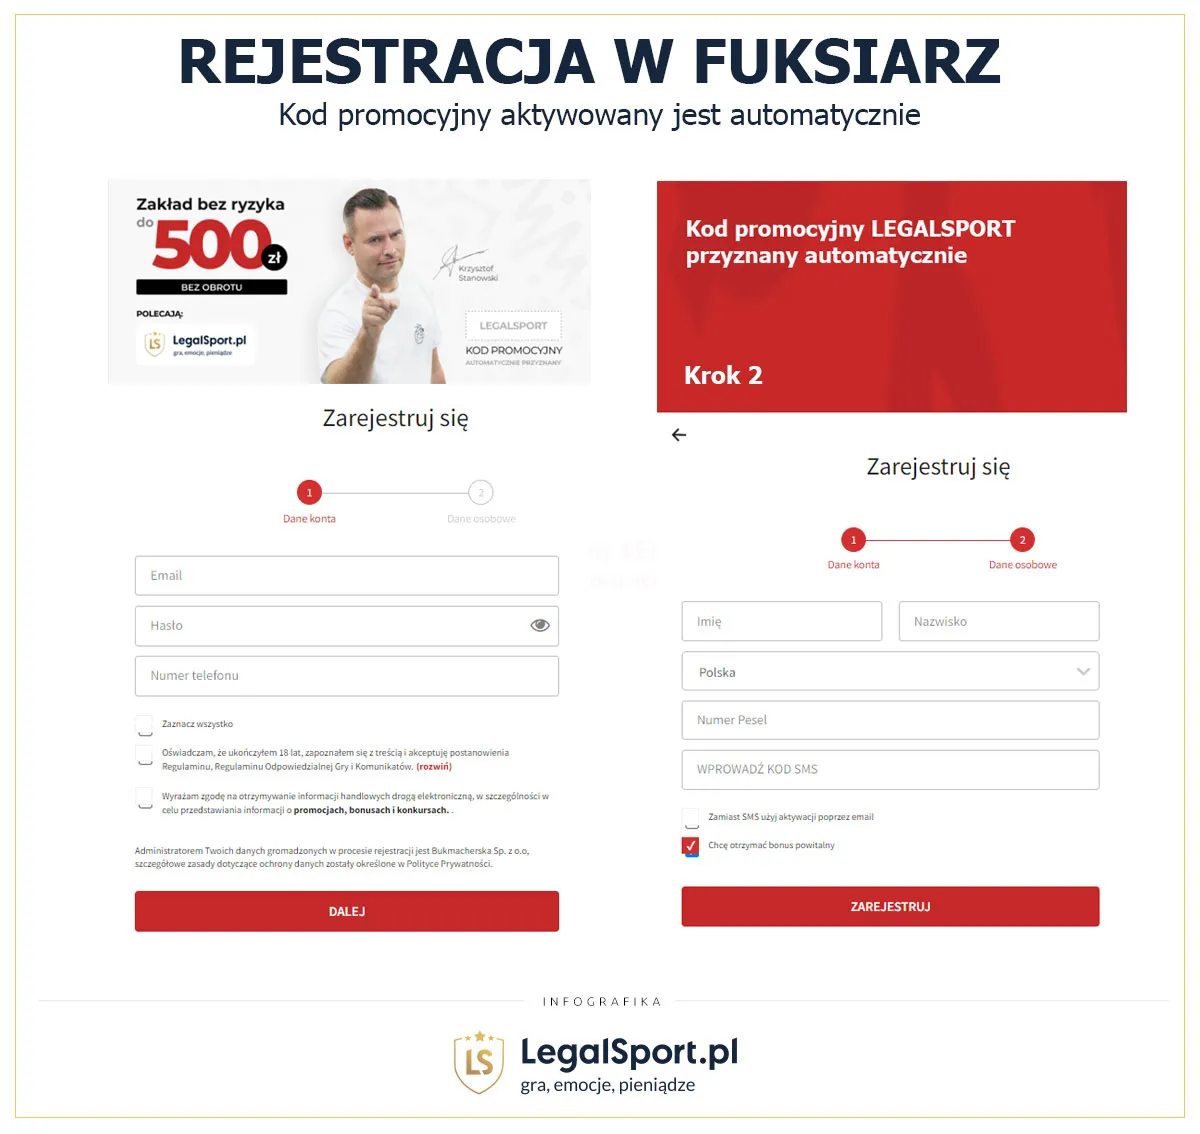 Rejestracja profilu do betowania w Fuksiarzu - formularz rejestracyjny